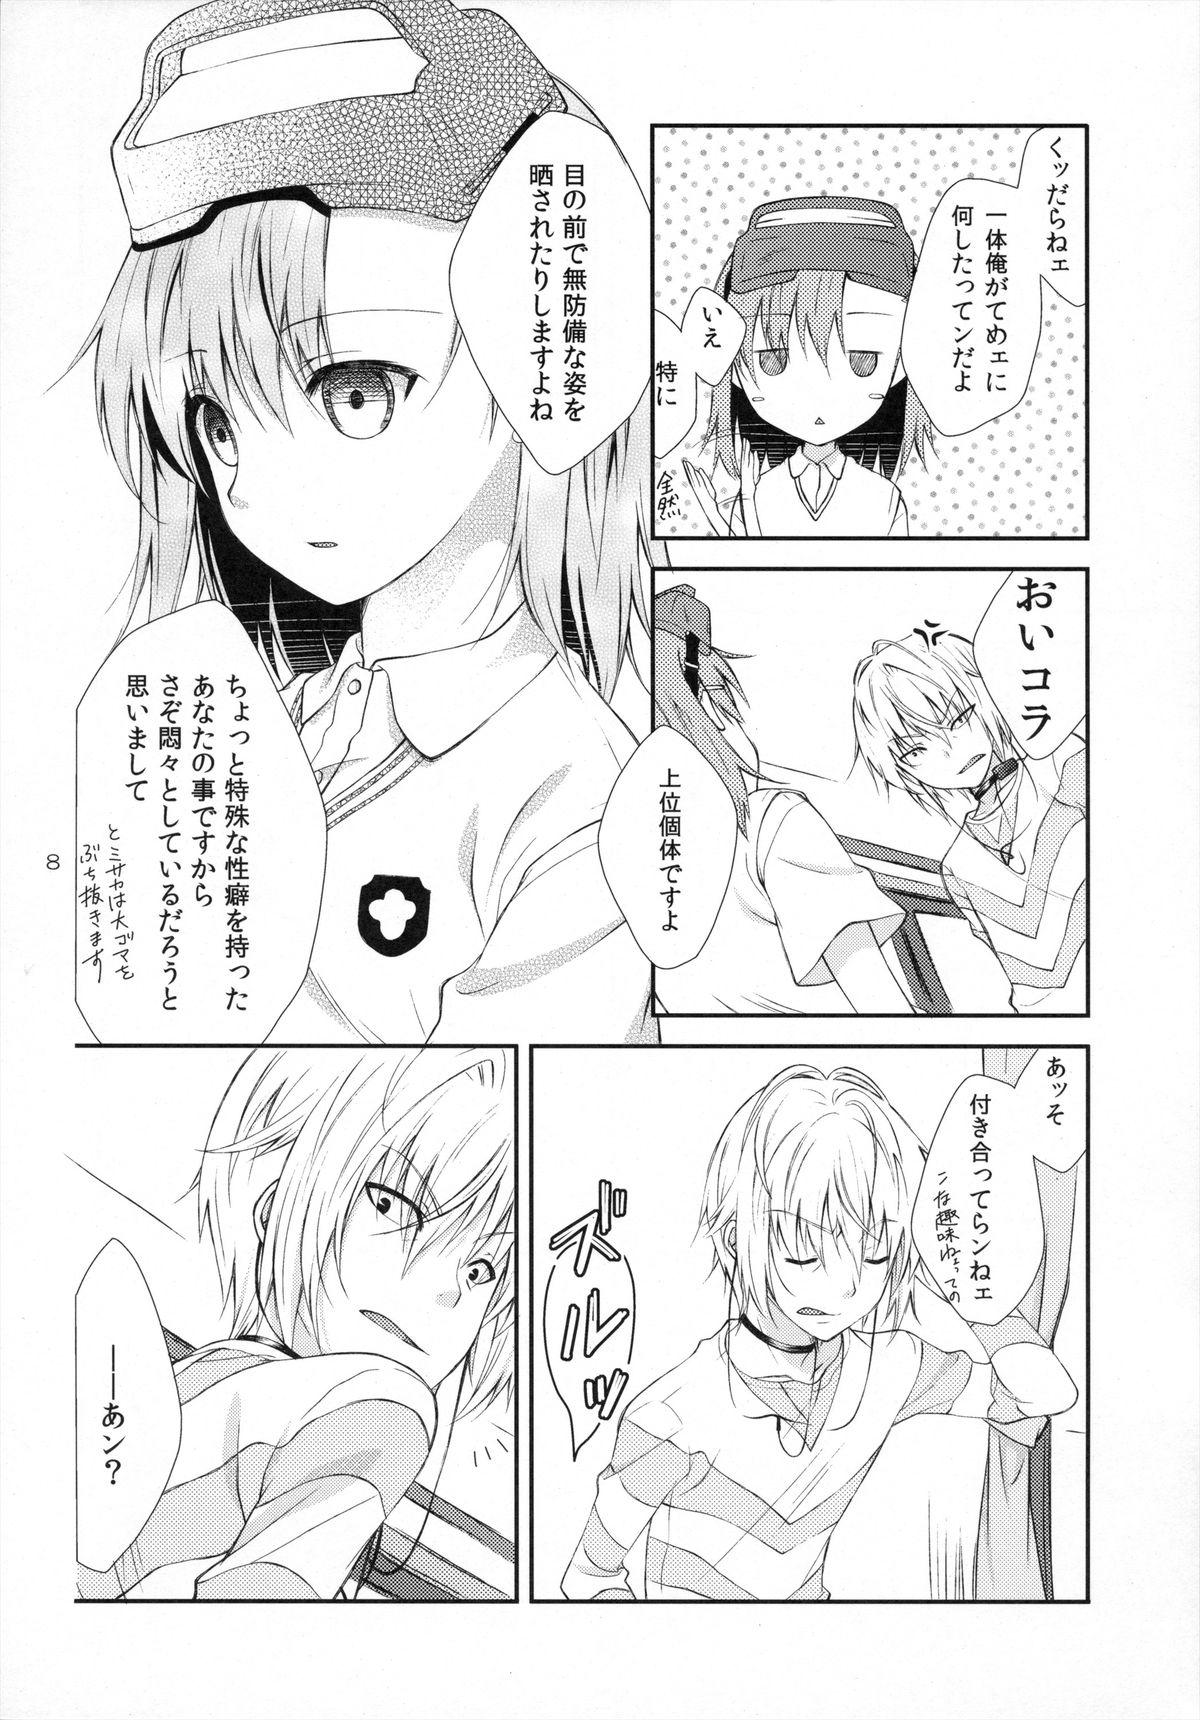 Students Syooga nee daro, Suki nan dakara. - Toaru majutsu no index Ex Girlfriend - Page 7